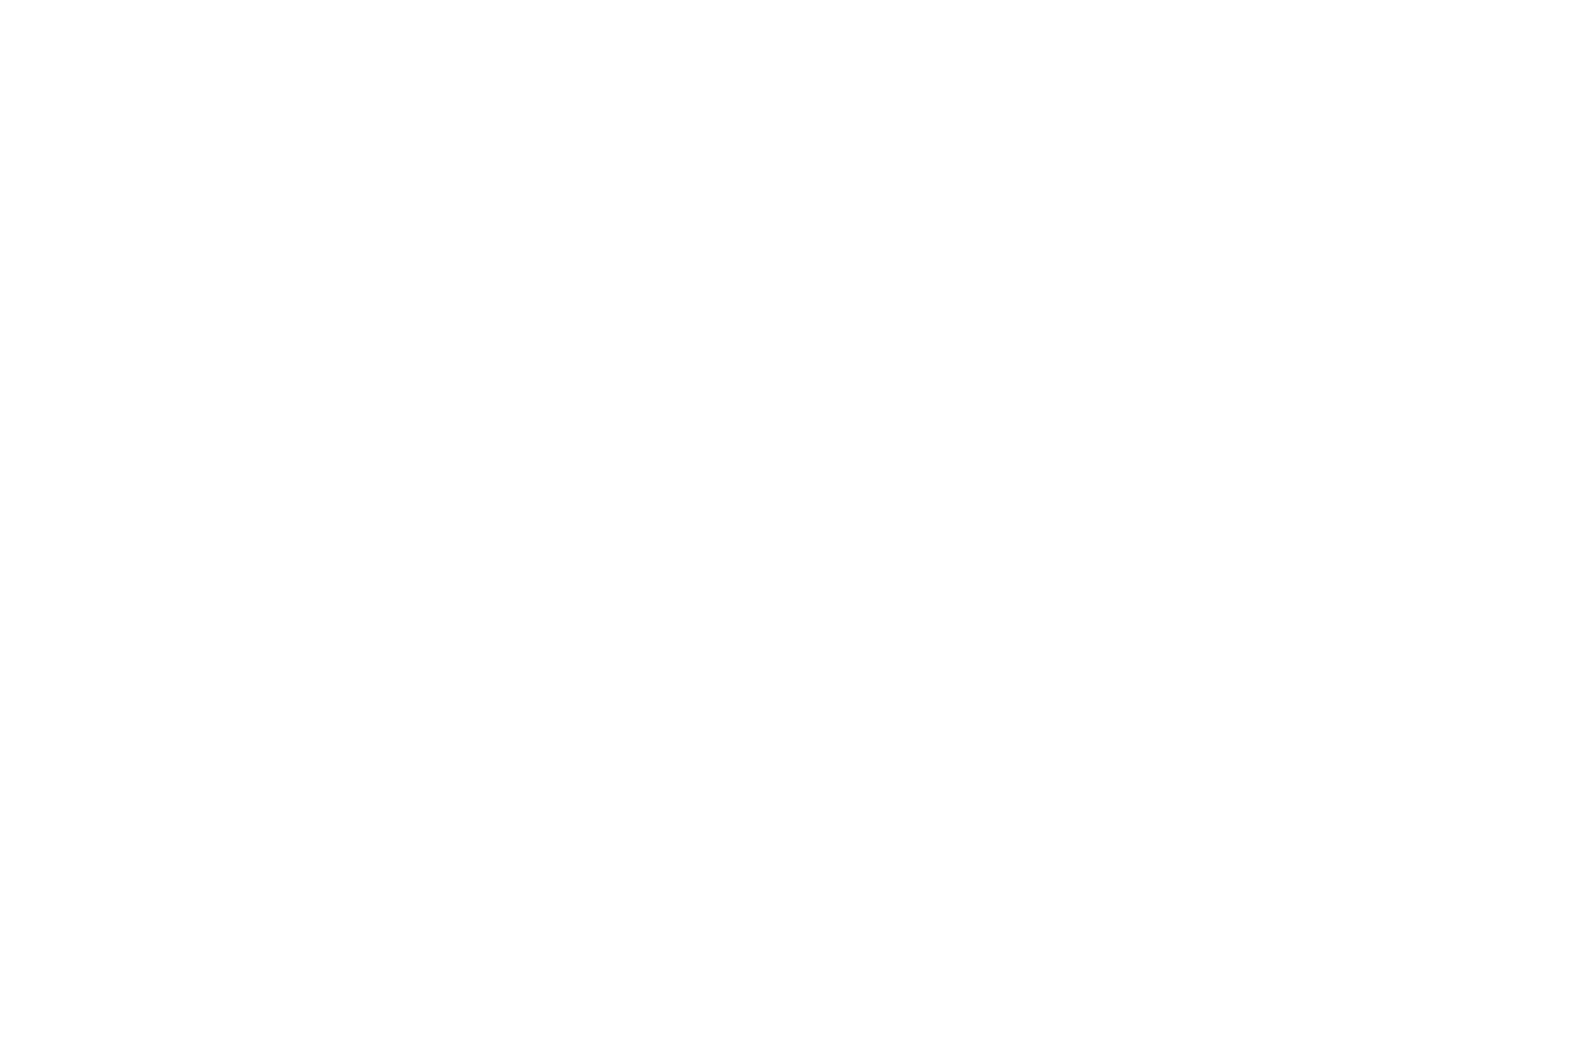 Vince Holding logo for dark backgrounds (transparent PNG)